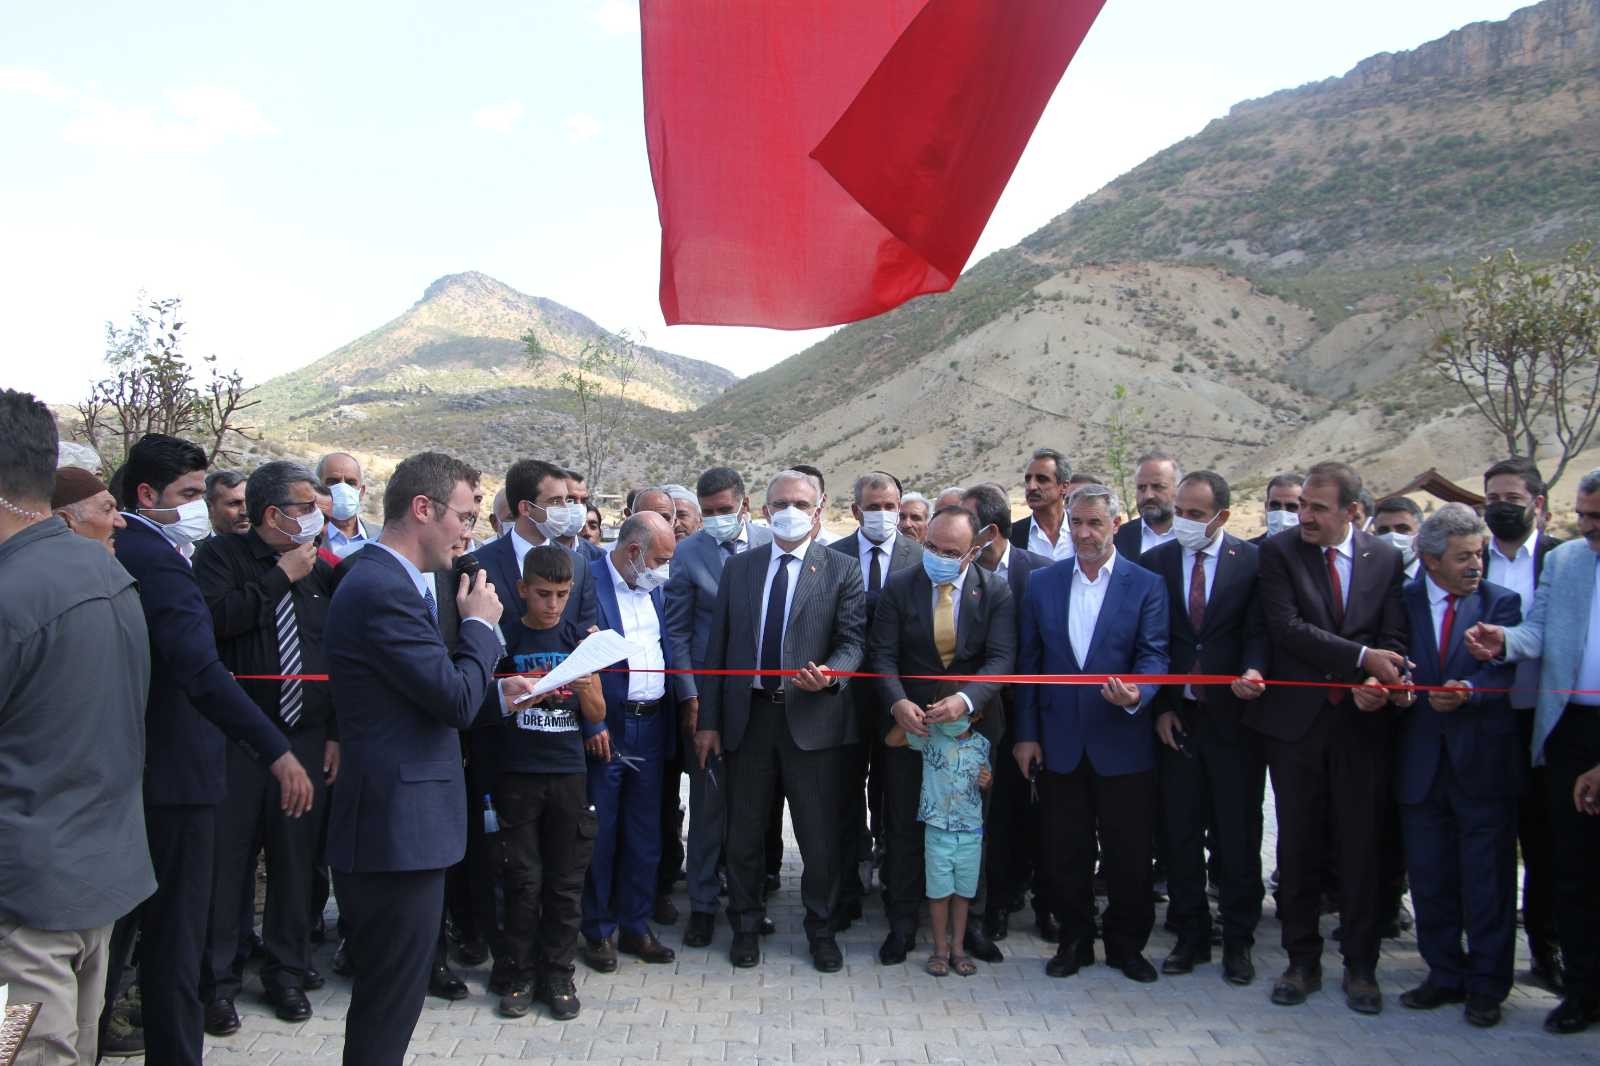 Elazığ’da belde belediyesi vatandaşlar için Millet Bahçesi yaptı, iki vali açılışa katıldı #elazig